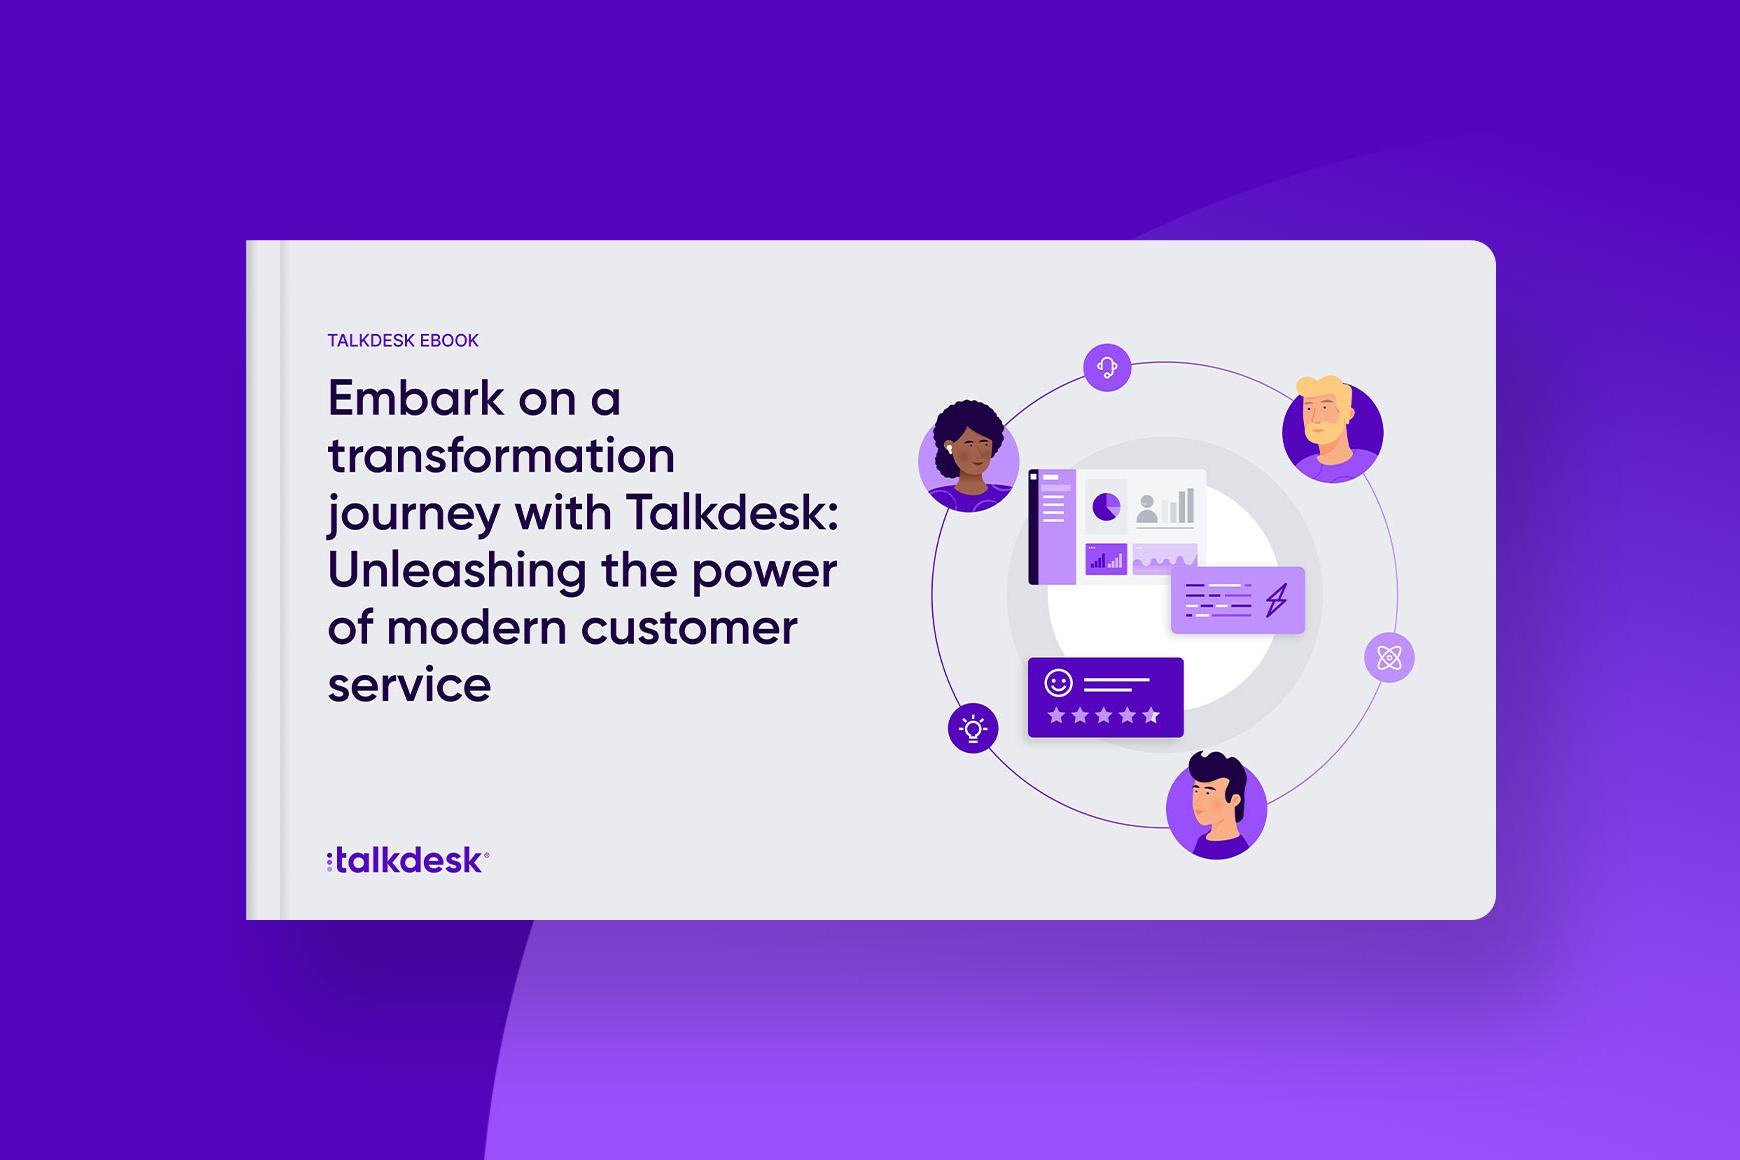 Emprenda un viaje de transformación con Talkdesk: libere el poder de un moderno servicio de atención al cliente.